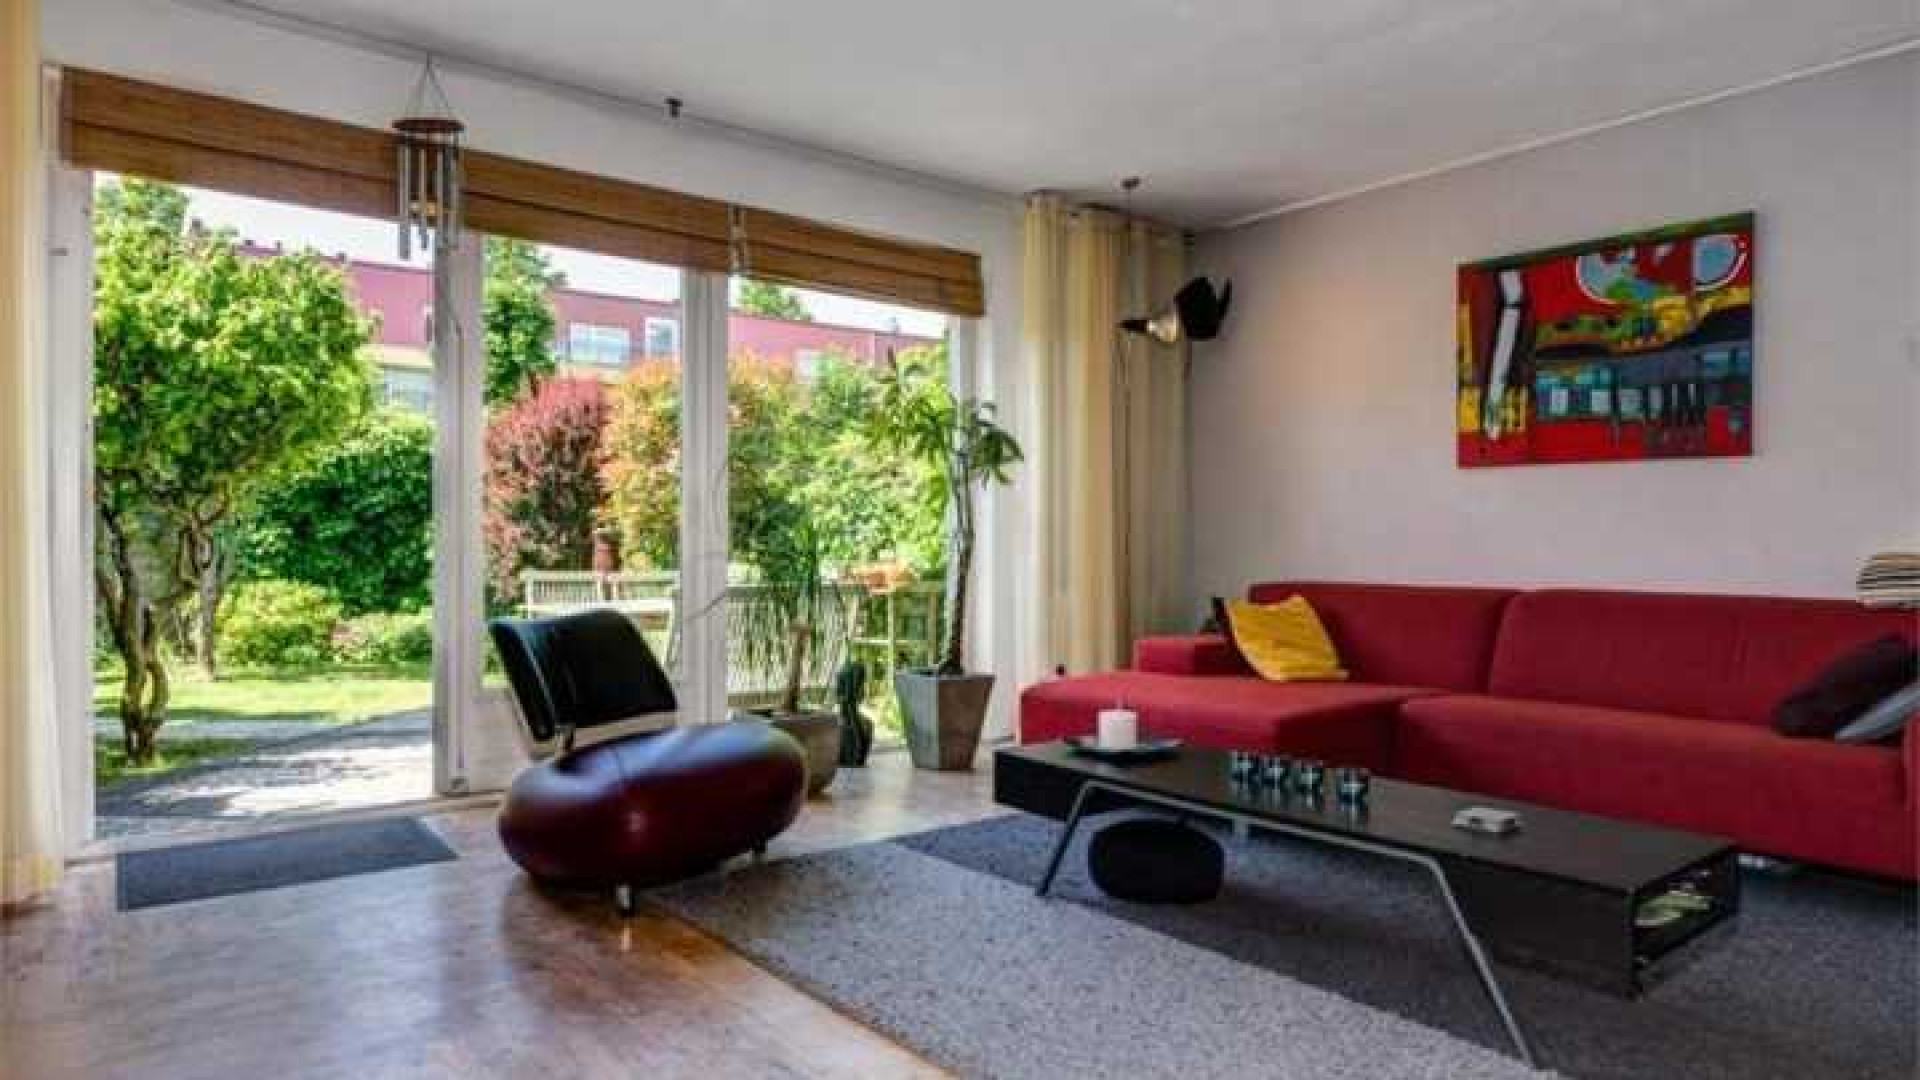 Robin van Persie koopt eengezinswoning in Rotterdam. Zie foto's